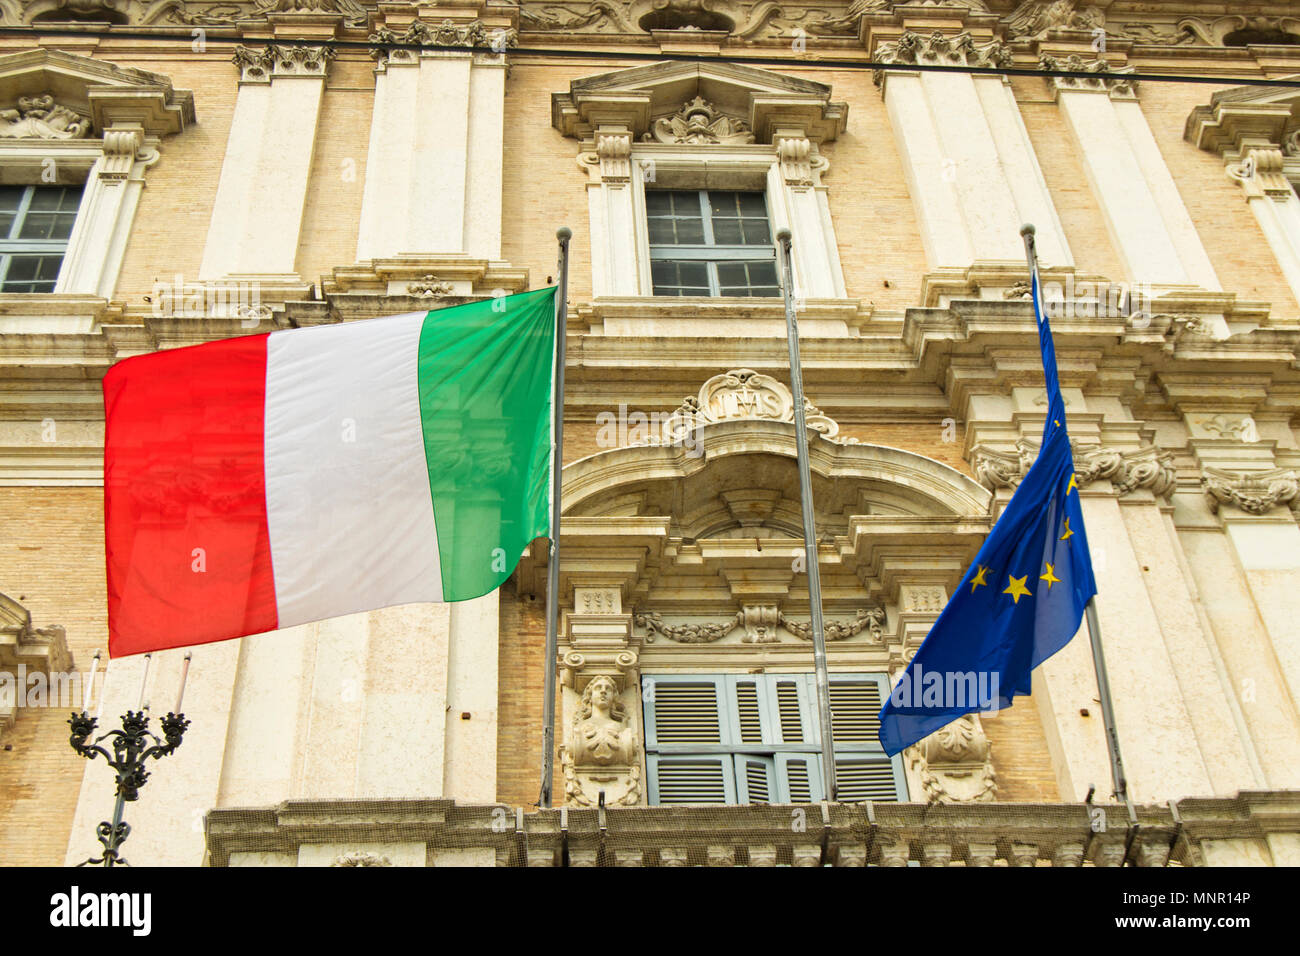 Drapeaux italiens et européens sur un balcon de l'académie de l'armée italienne - Modena, palais ducal Banque D'Images